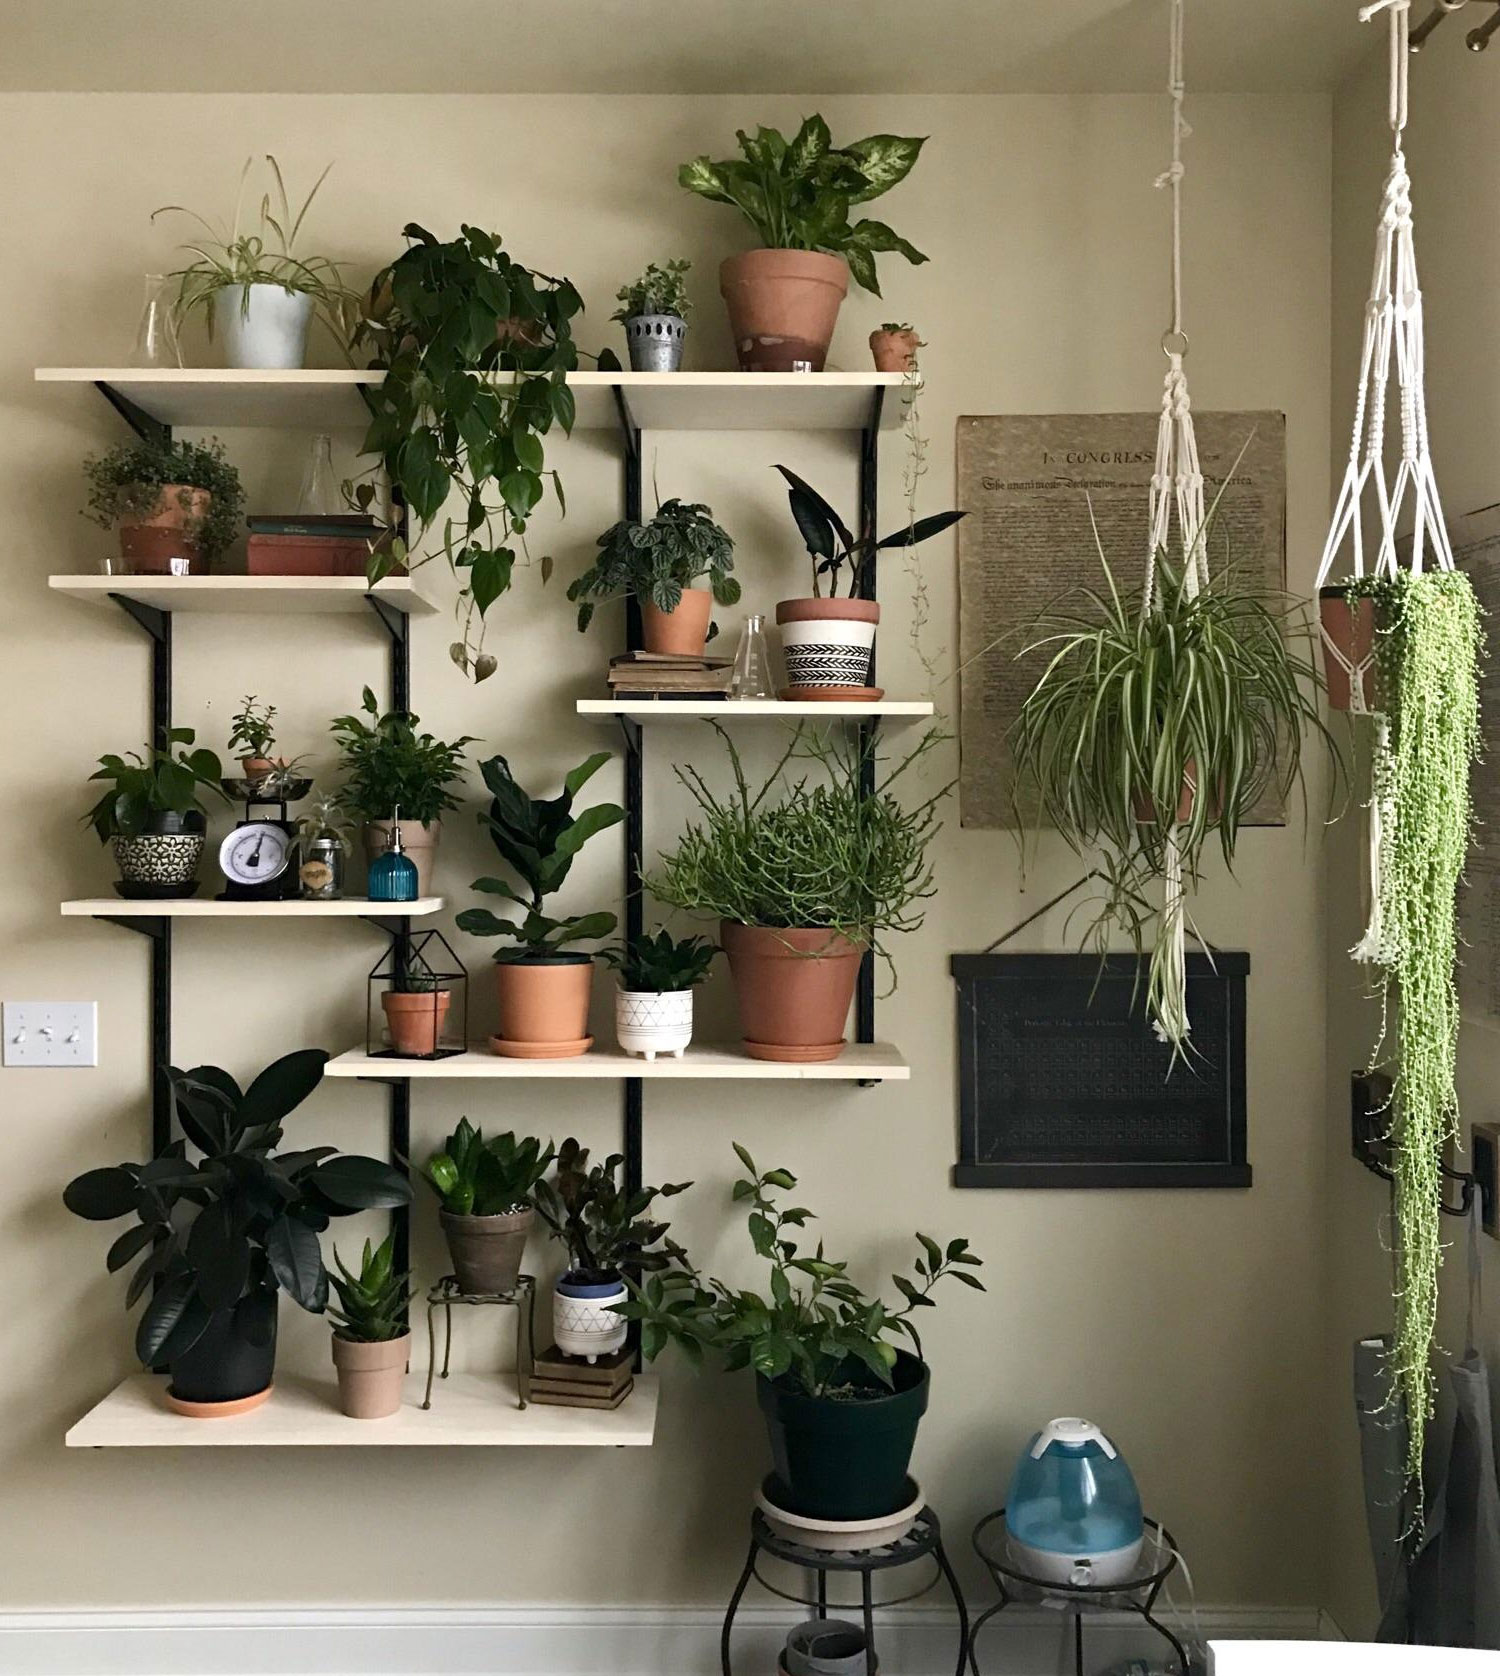 mini garden on the shelves